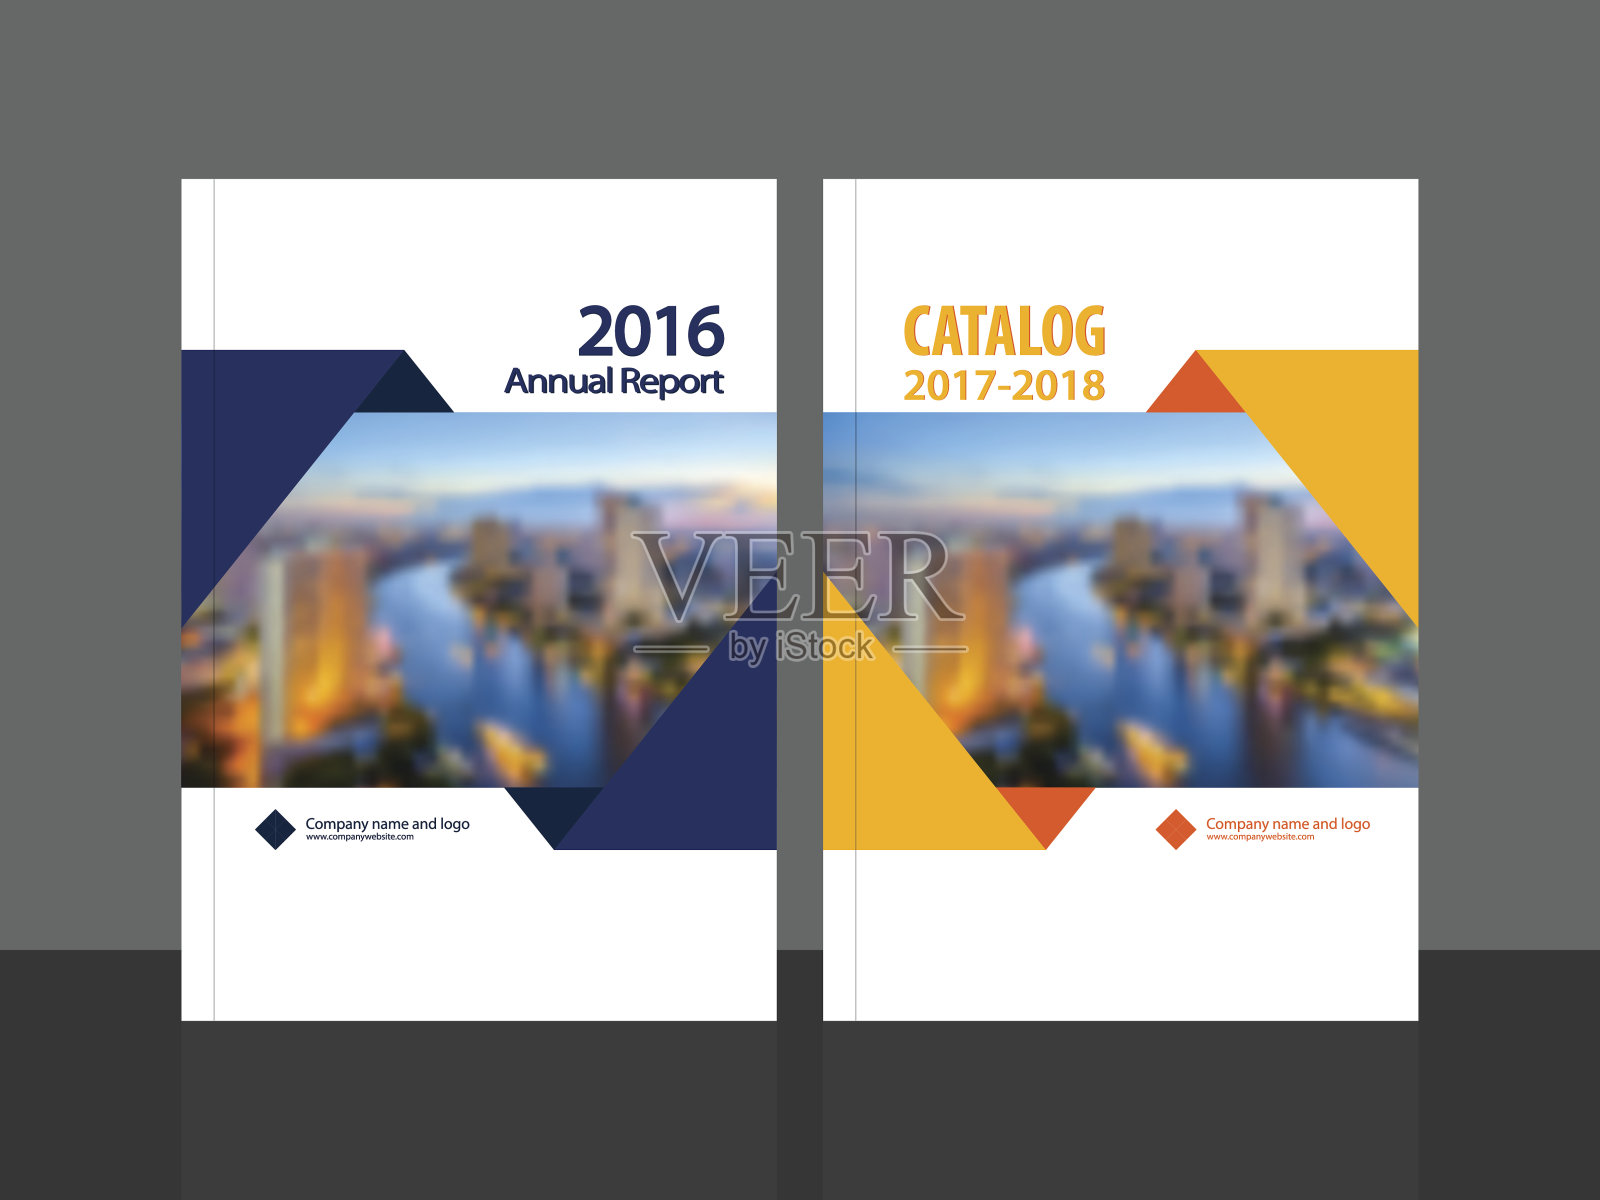 年度报告和目录的封面设计设计模板素材